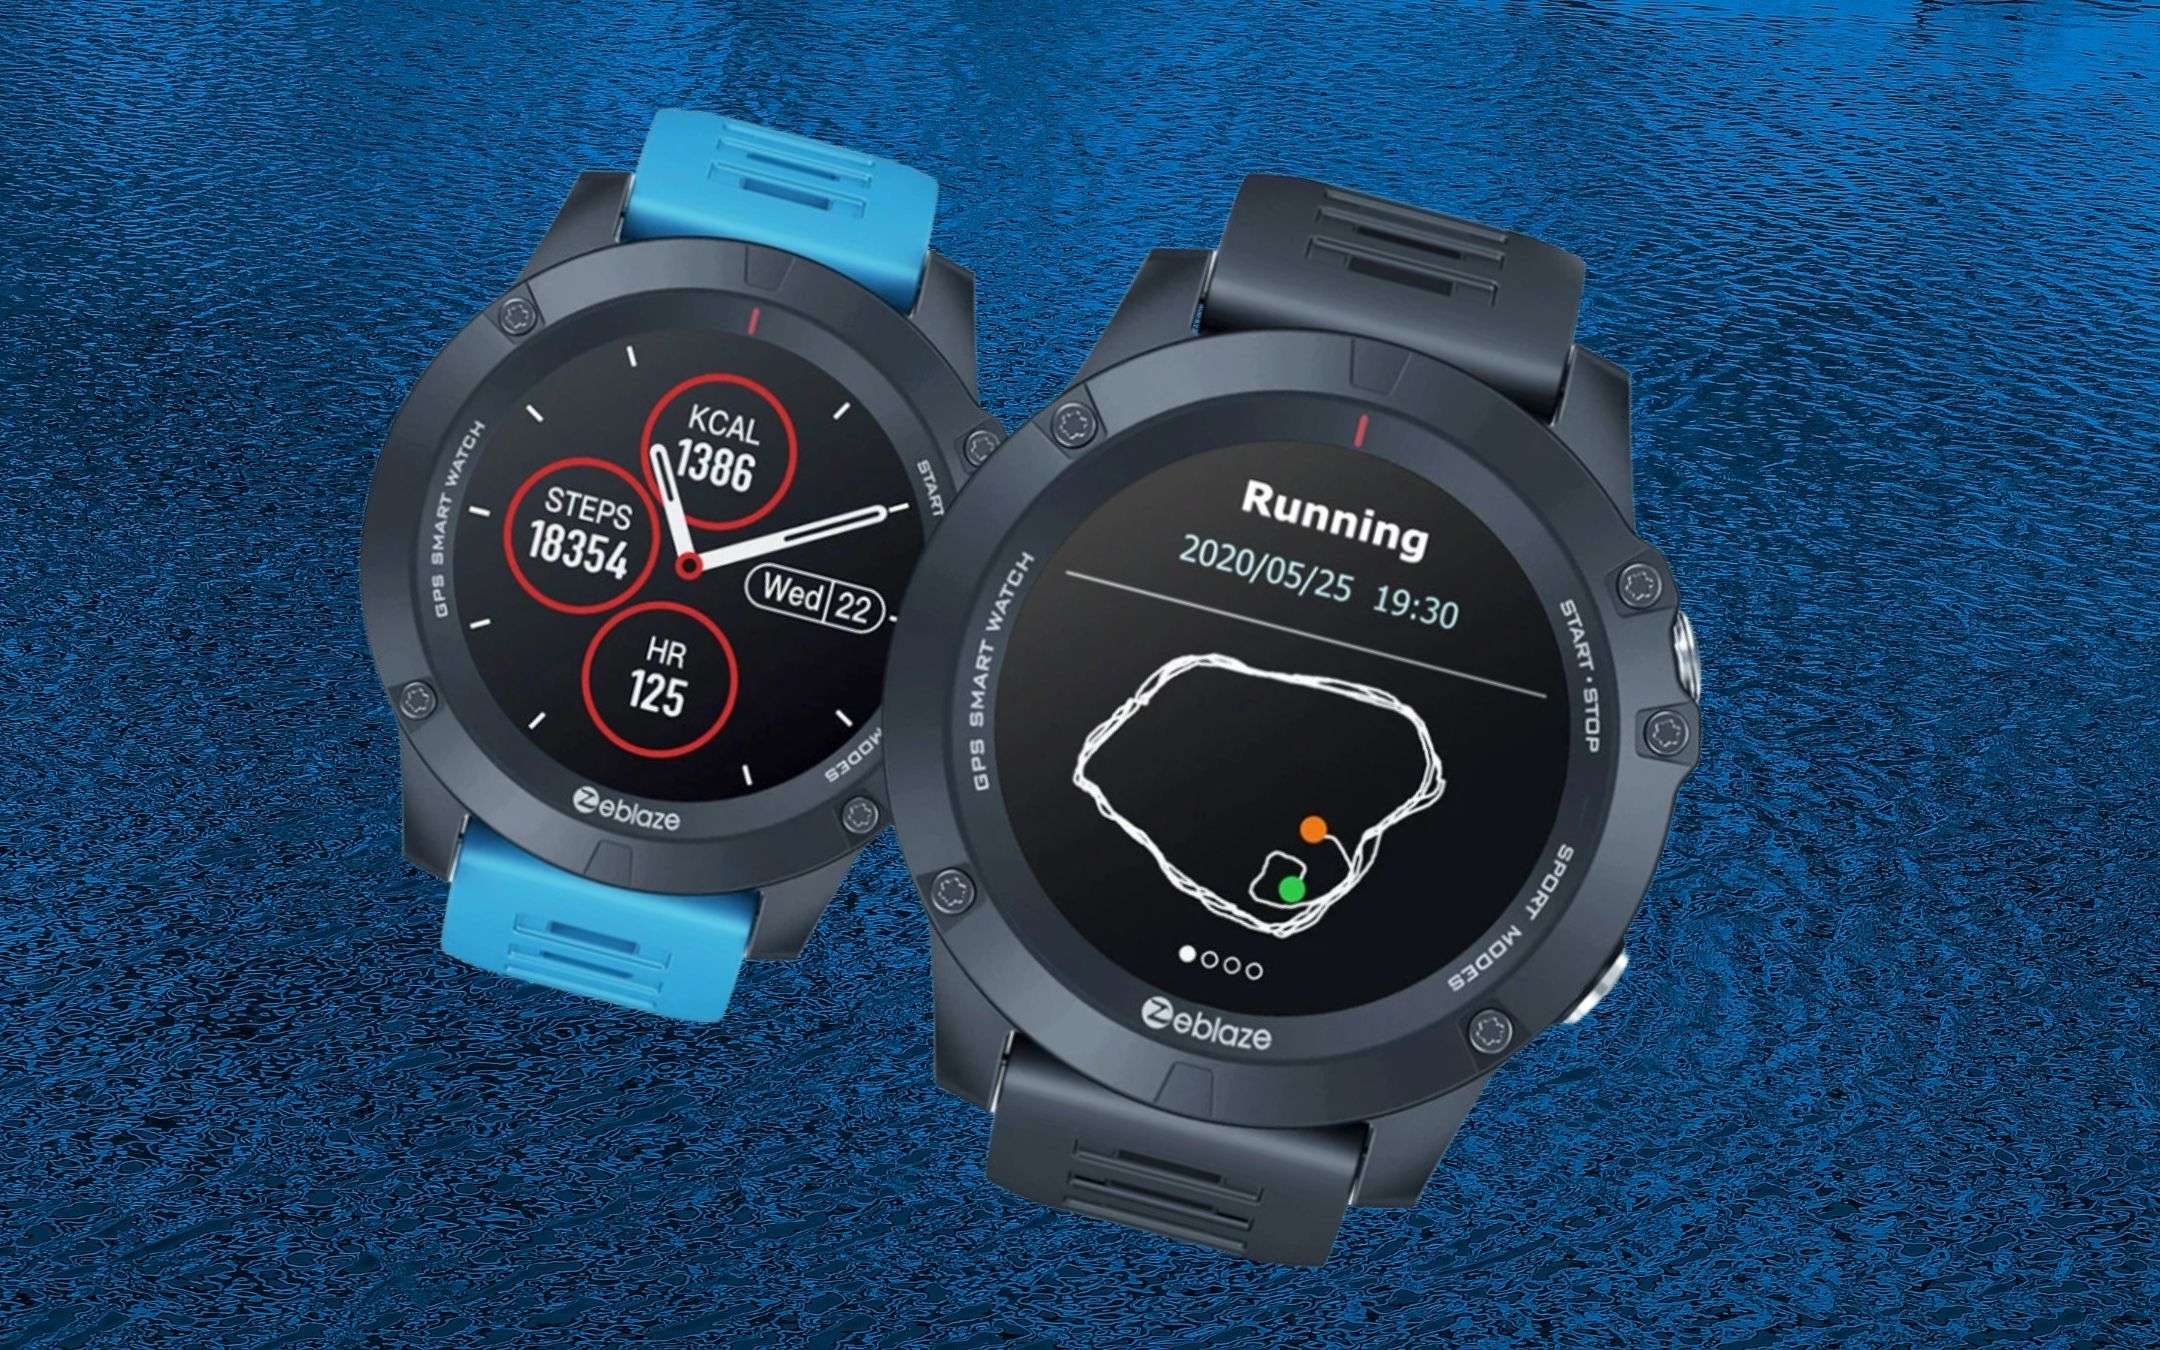 Potente smartwatch con GPS: prezzo BOMBA (36€)